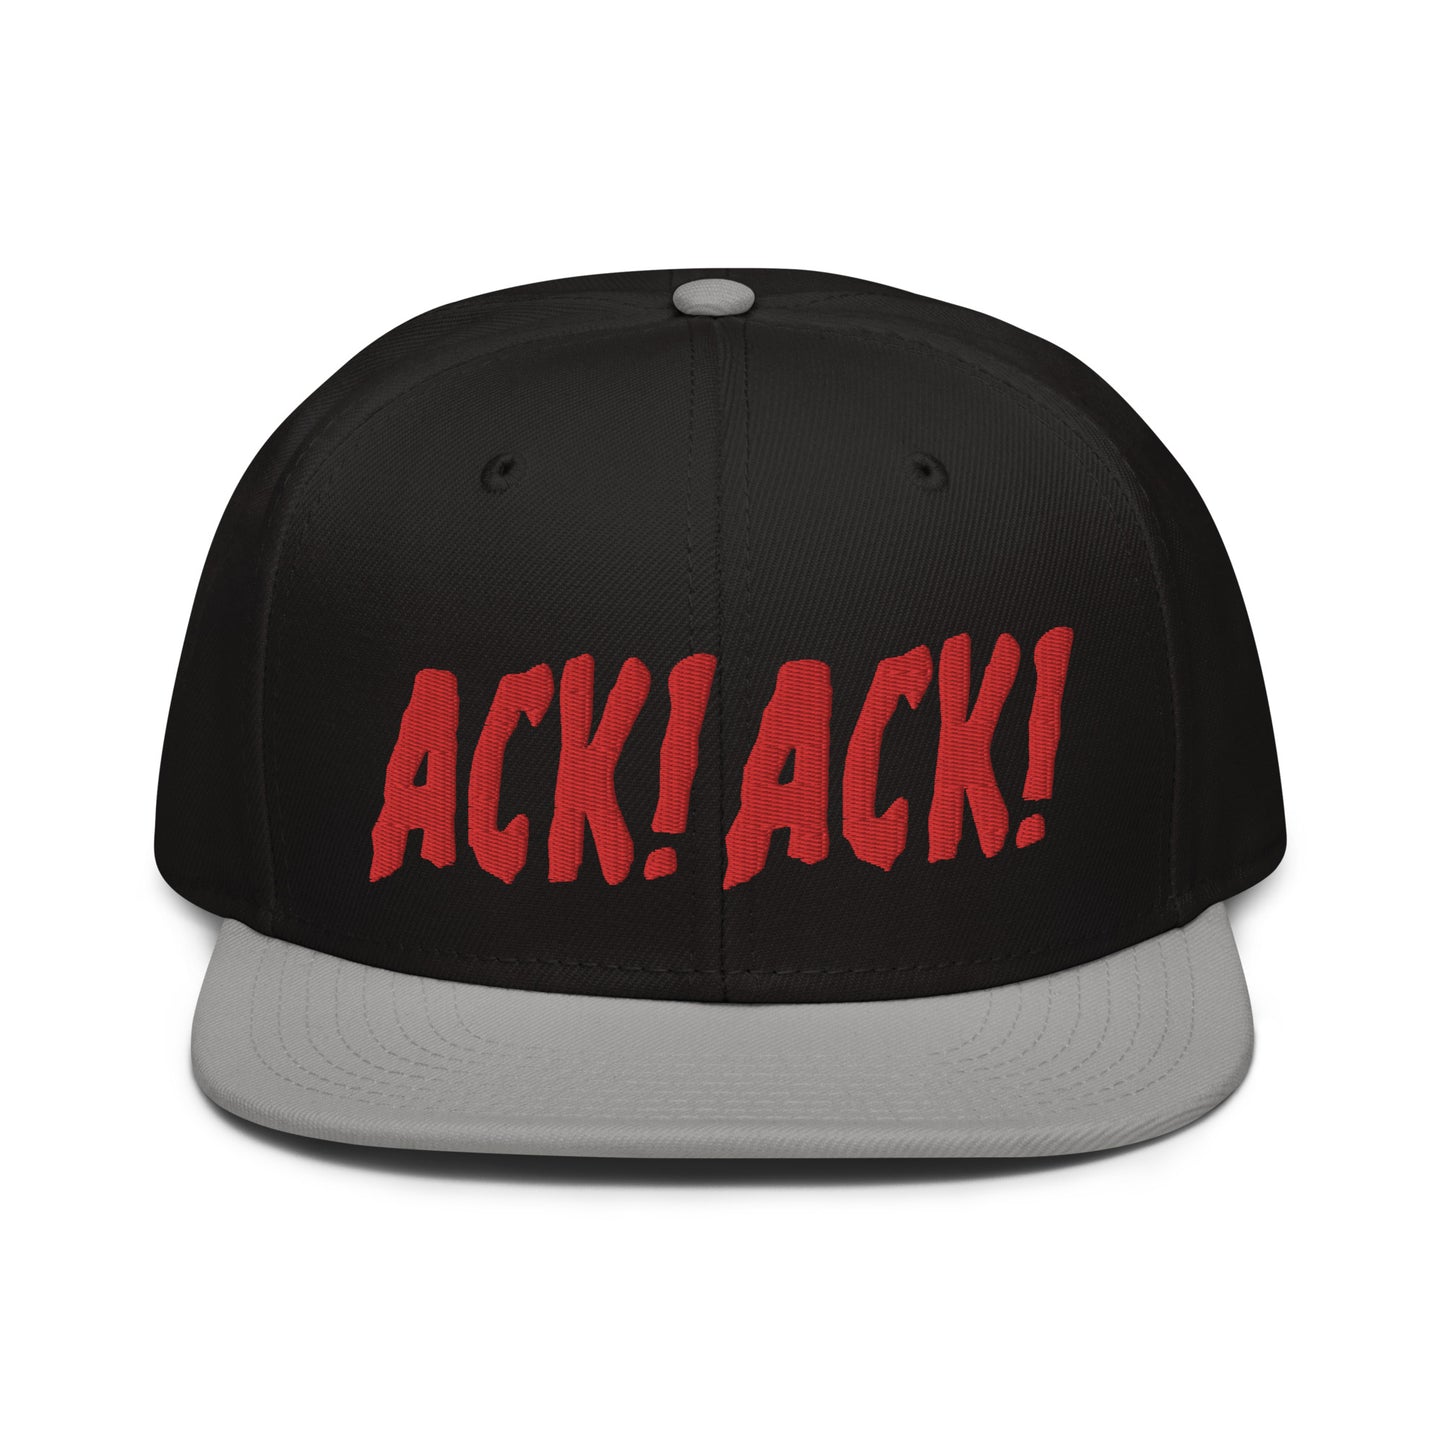 ACK! ACK! snapback hat